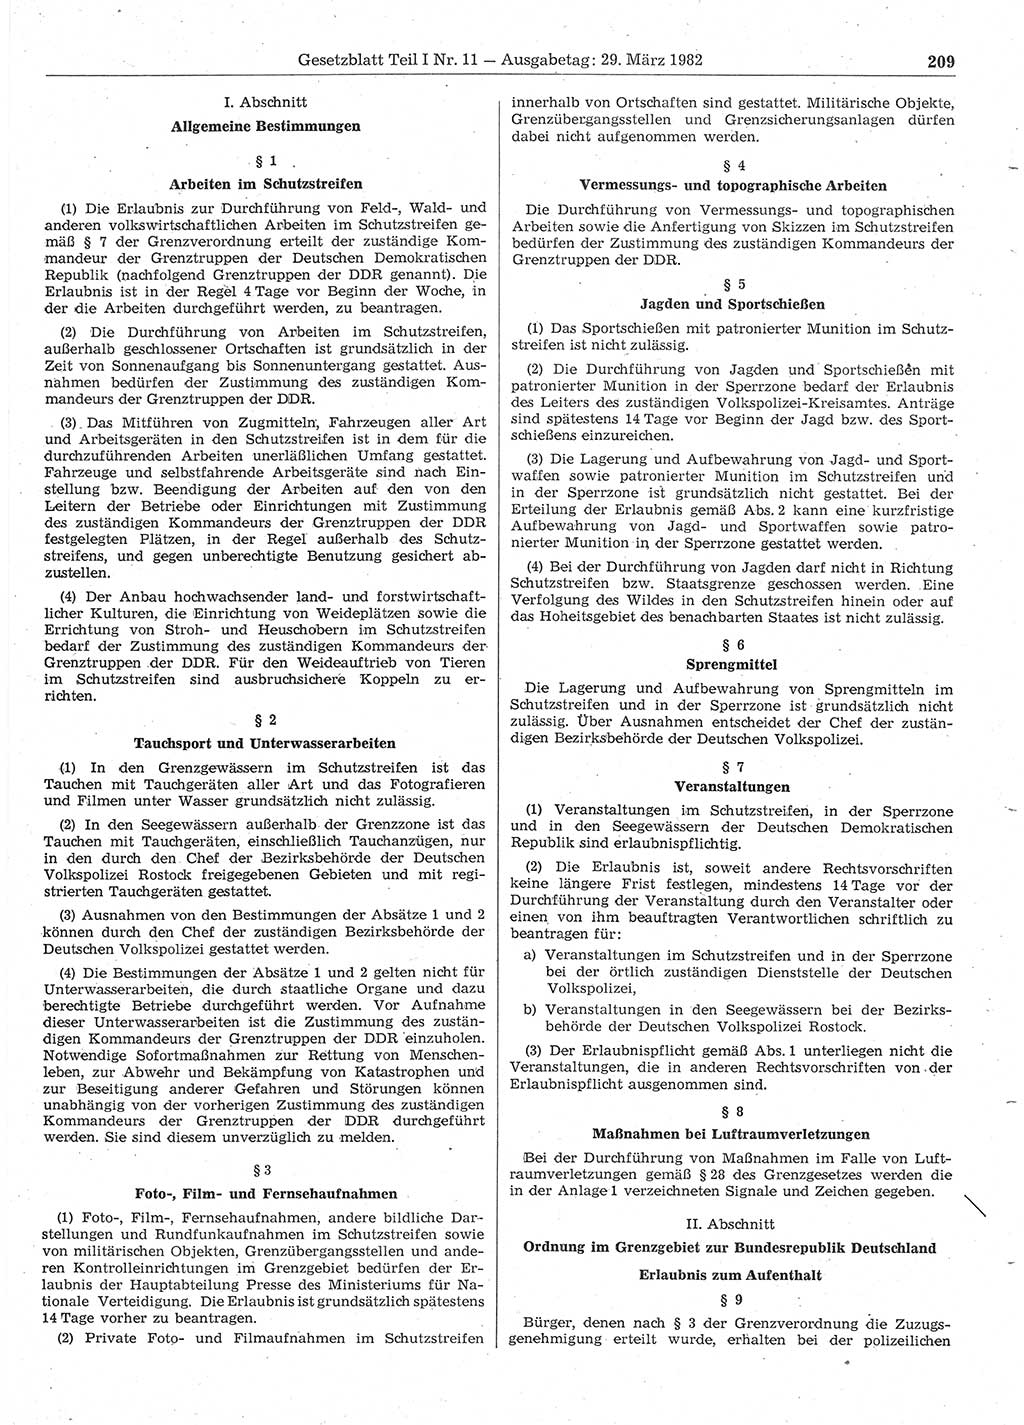 Gesetzblatt (GBl.) der Deutschen Demokratischen Republik (DDR) Teil Ⅰ 1982, Seite 209 (GBl. DDR Ⅰ 1982, S. 209)